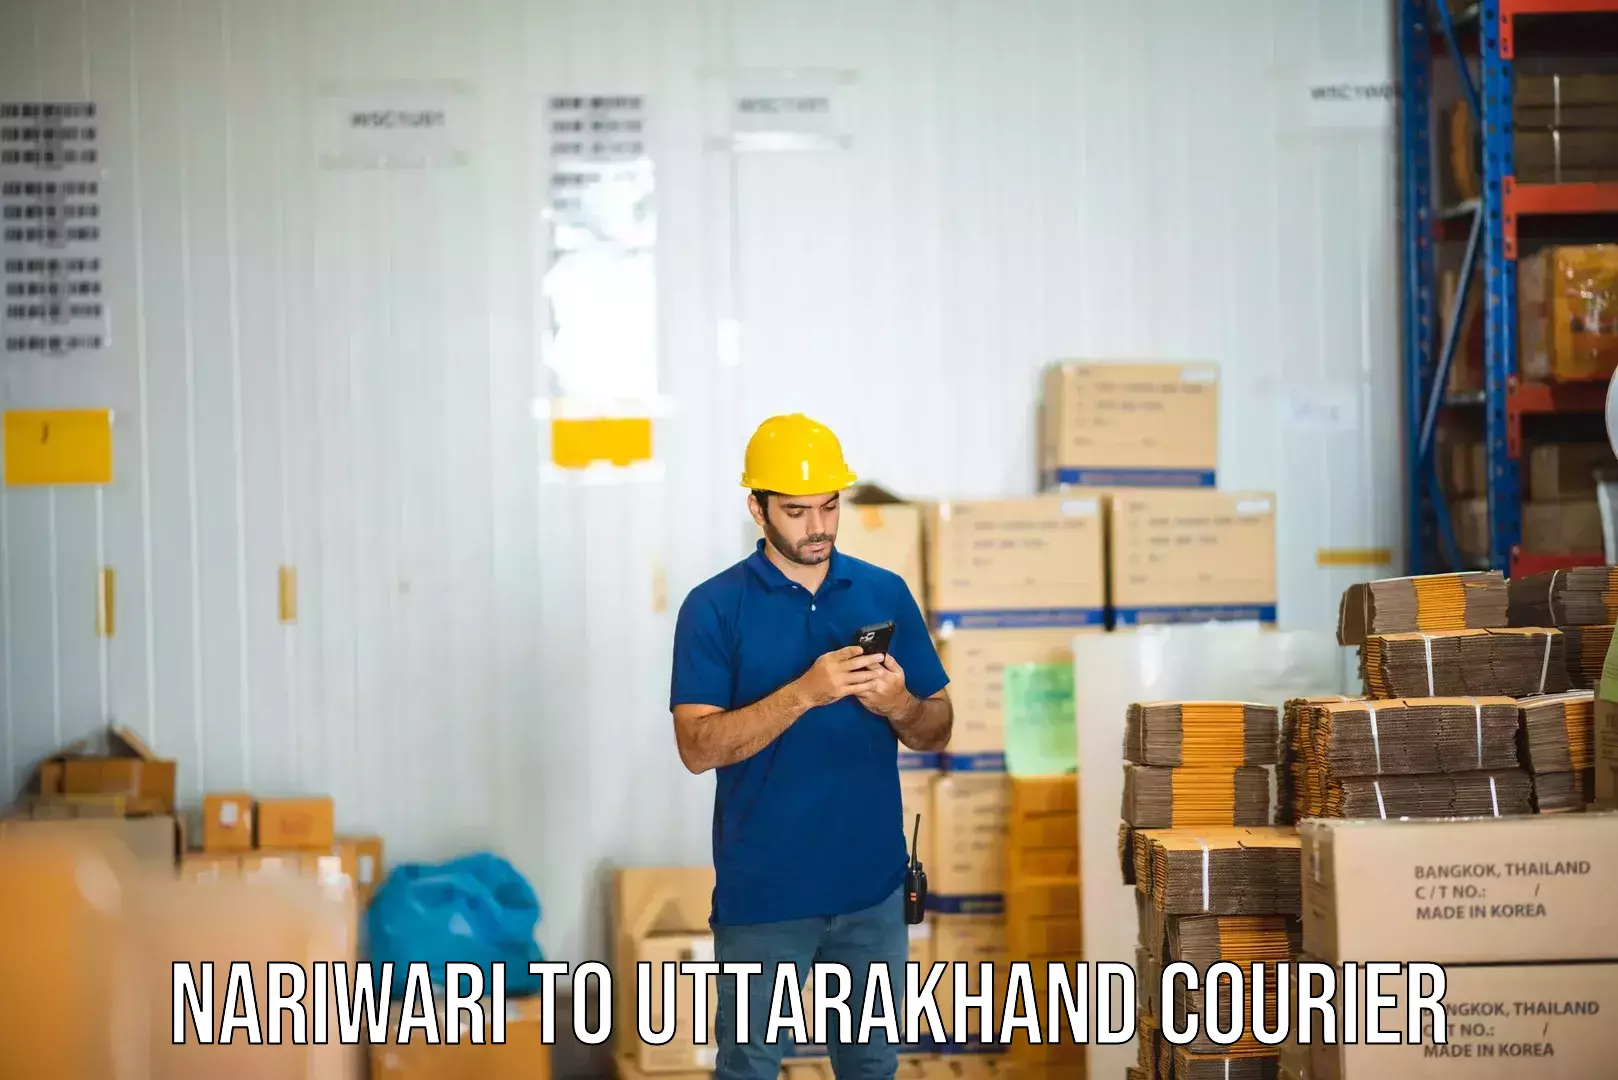 Regular parcel service Nariwari to Uttarakhand